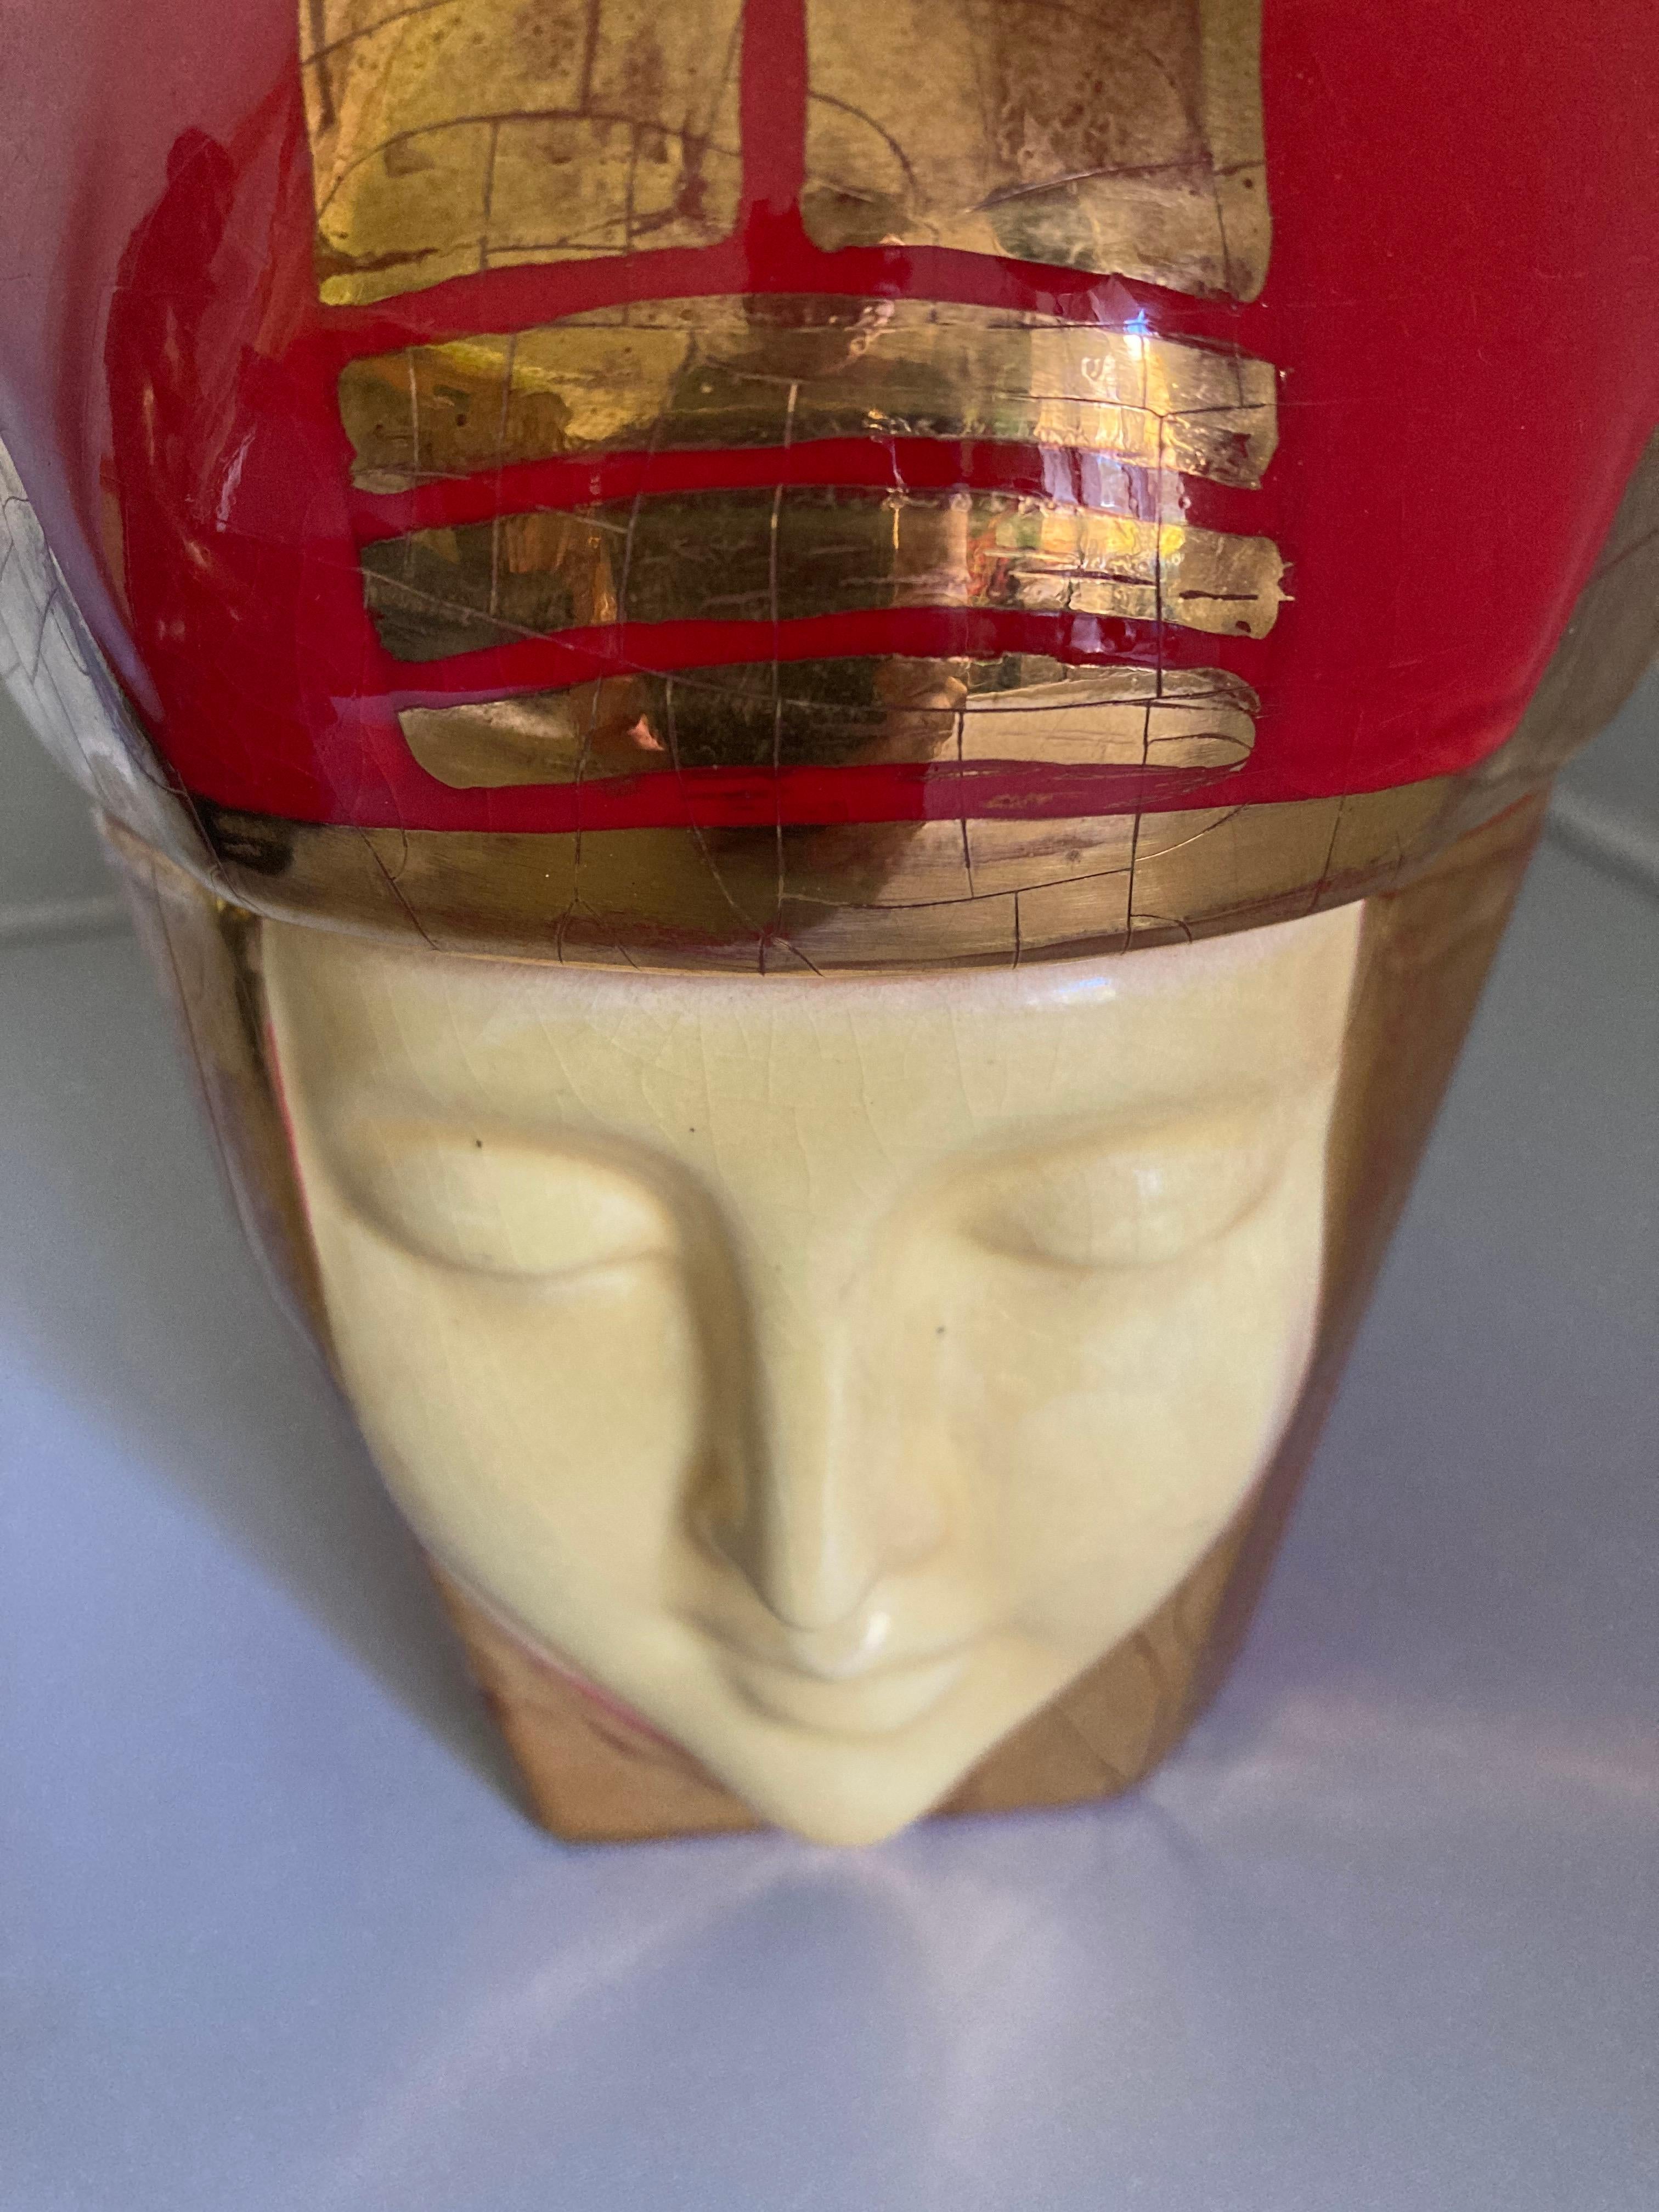 Bonbonnière décorative en céramique de Robj, Paris, de la période 1925-1930. État d'origine, aucune réparation ou restauration.
Couleurs vives et émail doré métallisé. Femme avec une couronne et des lignes en or. Cette figurine est magnifiquement